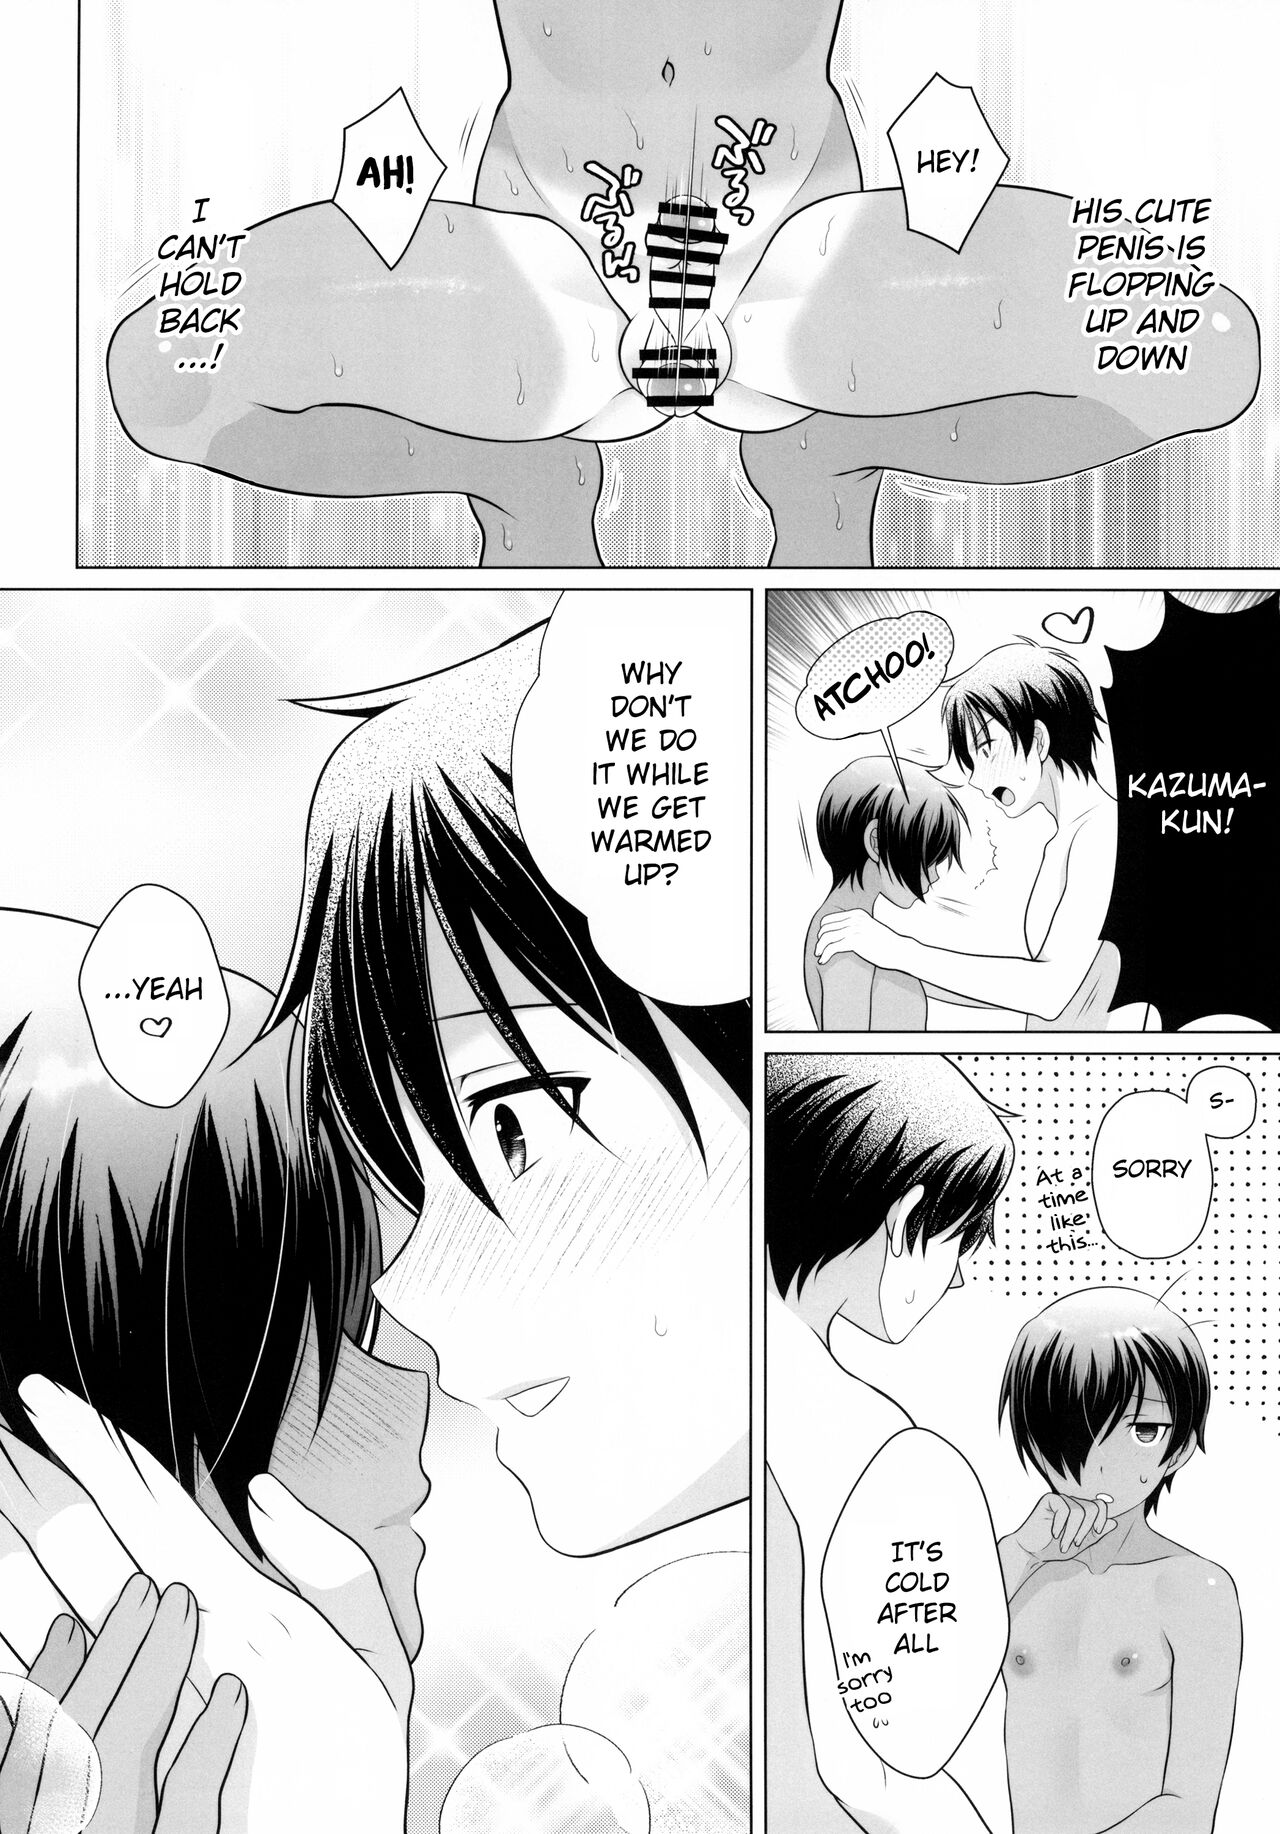 Kazuma-kun to IchaLove Onsen Sex | Flirty-Lovey Onsen Sex with Kazuma-kun - Foto 8